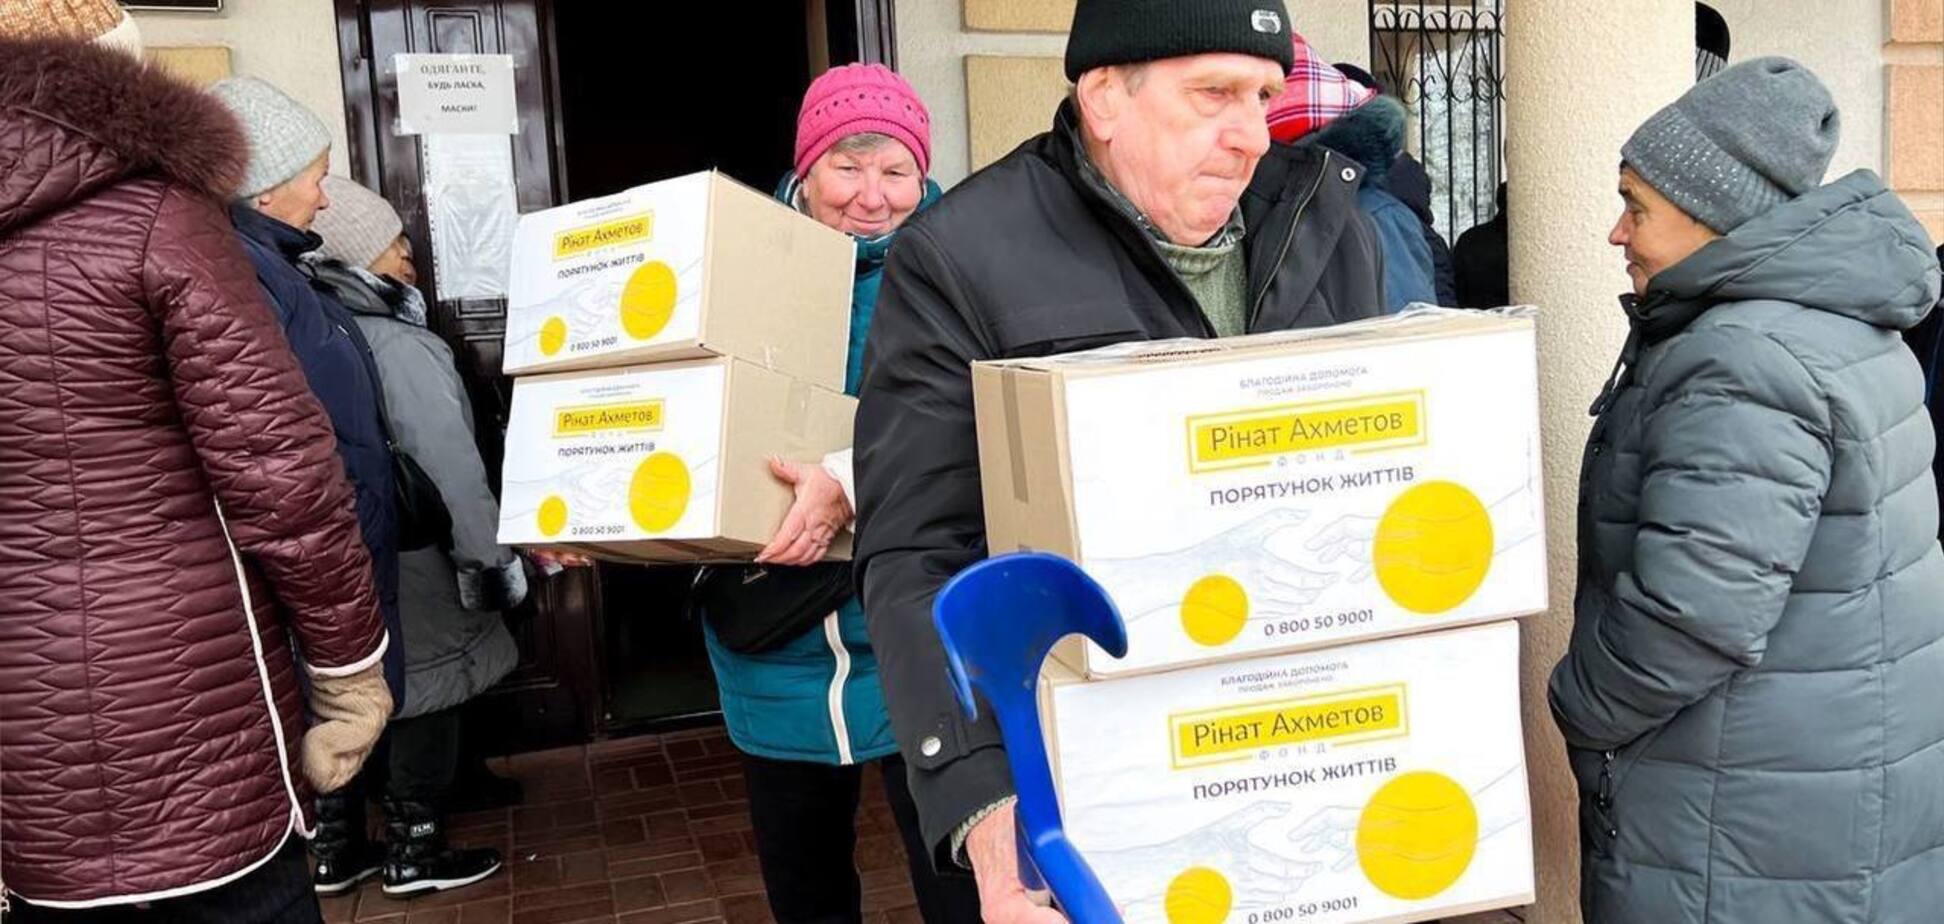 Жители Никопольского района получили проднаборы от Фонда Ахметова